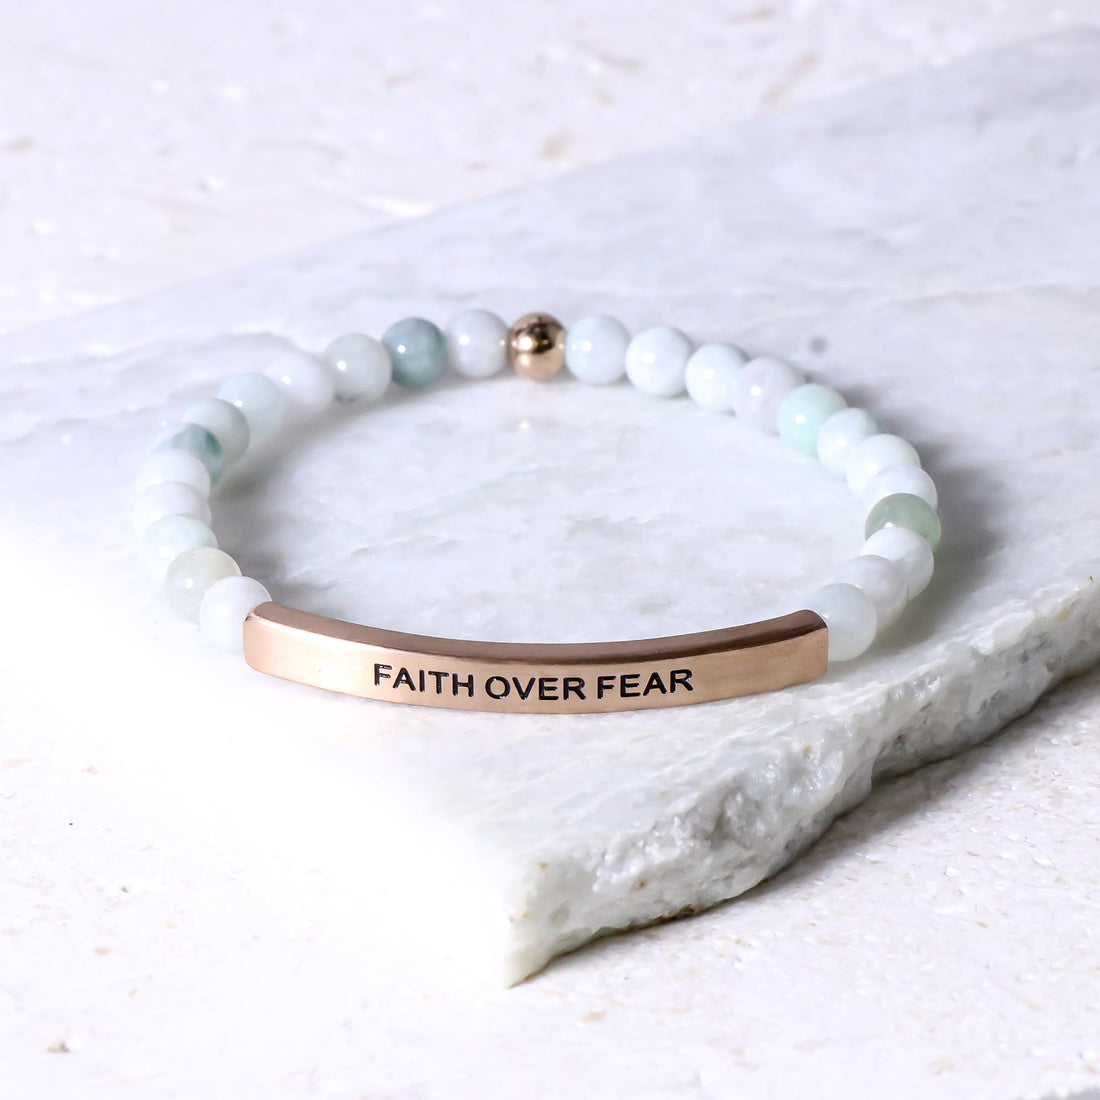 FAITH OVER FEAR - Inspiration Co.